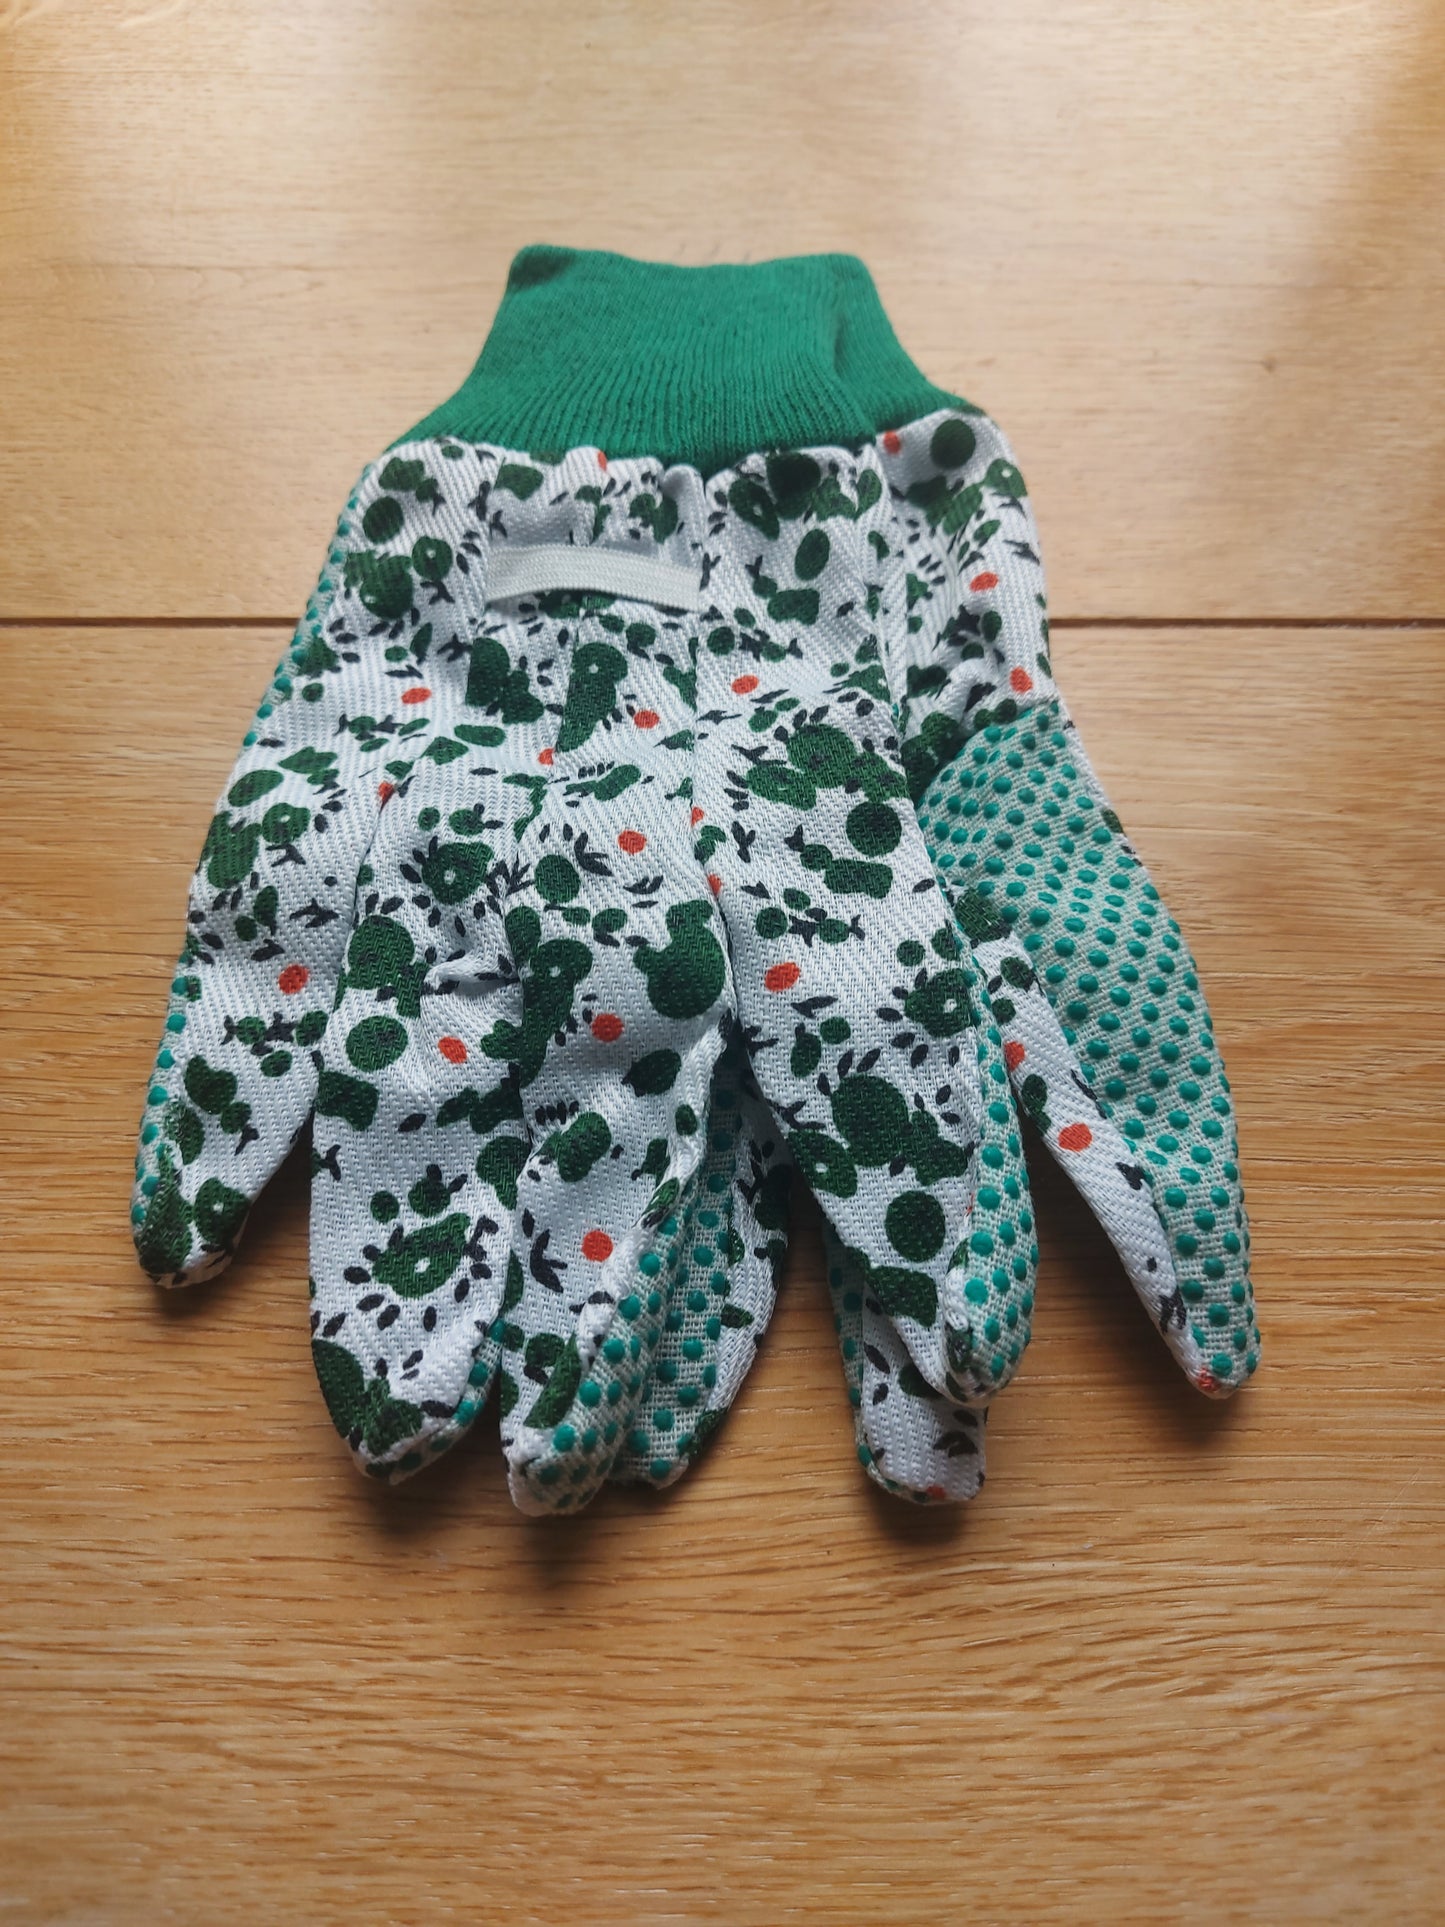 Women's Gardening Gloves